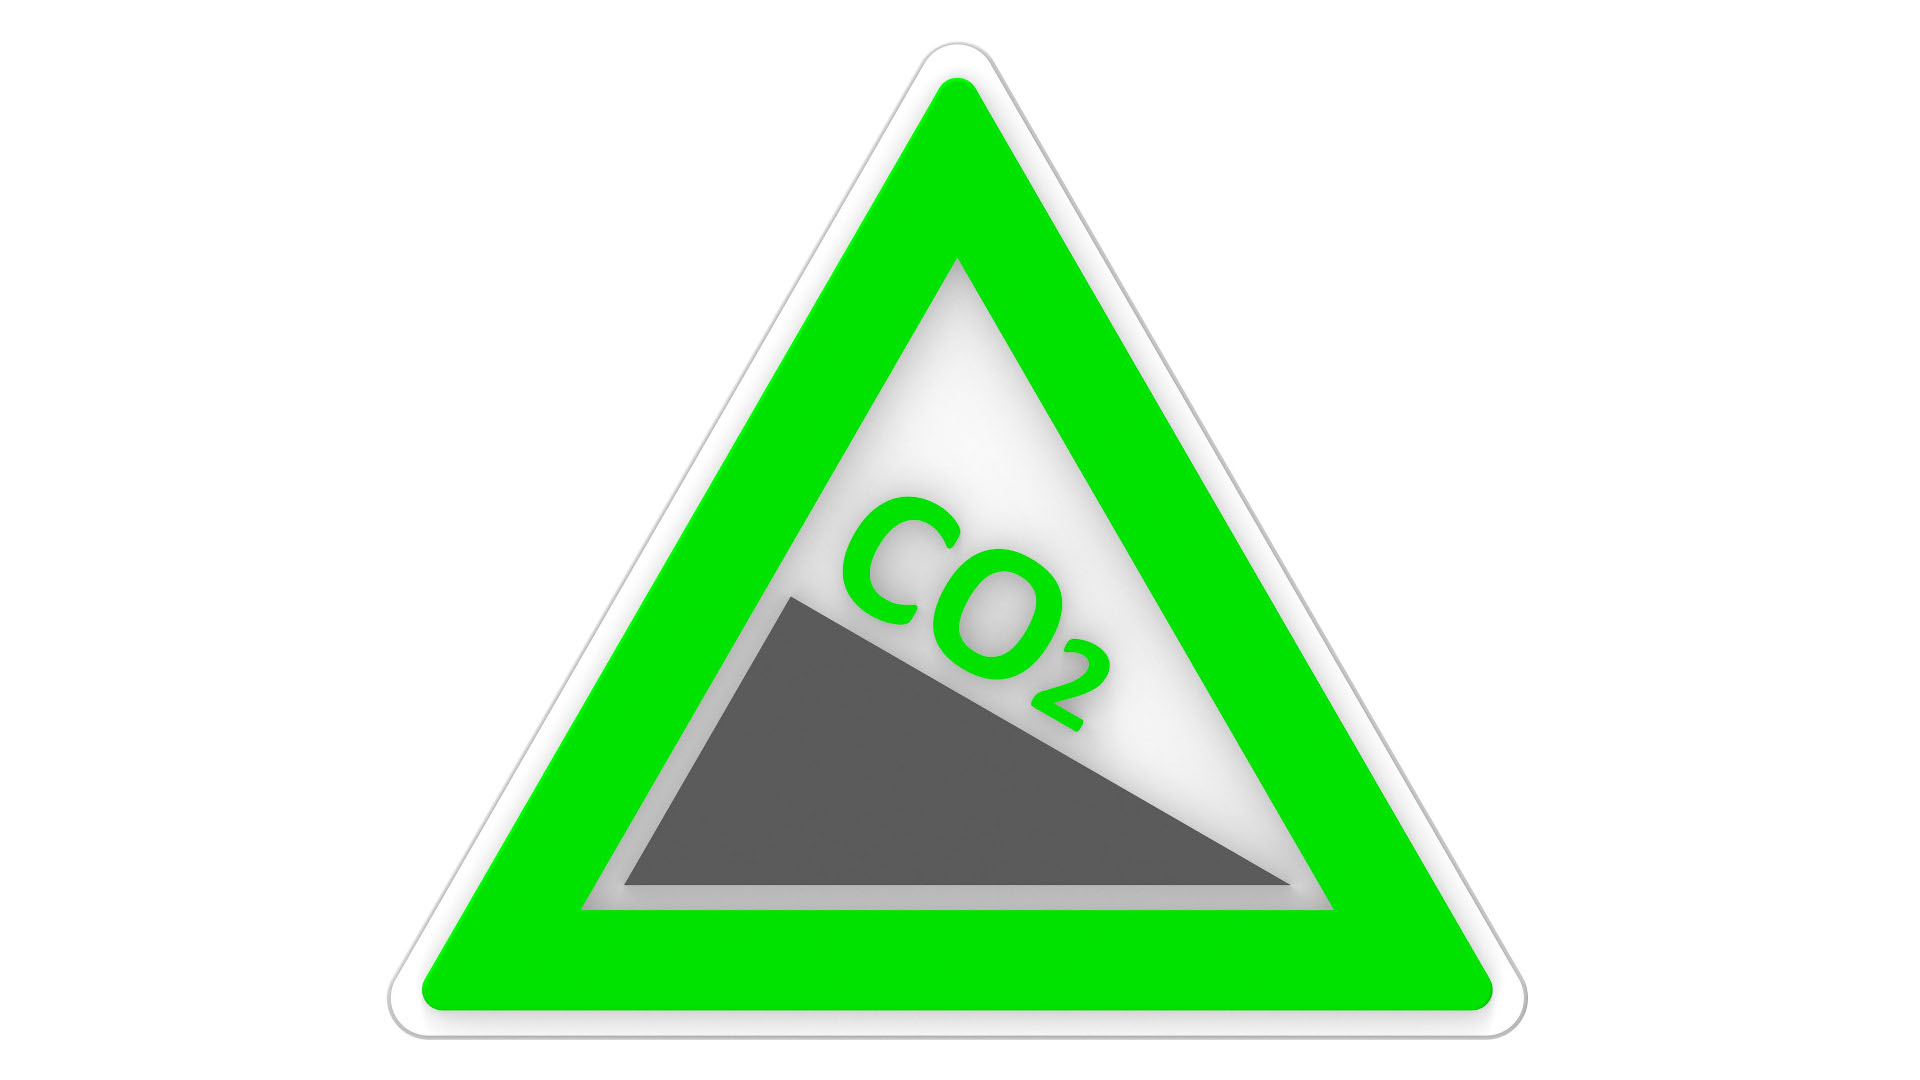 Dreieckiges Verkehrsschild mit grünem Rand, das CO2-Gefälle zeigt